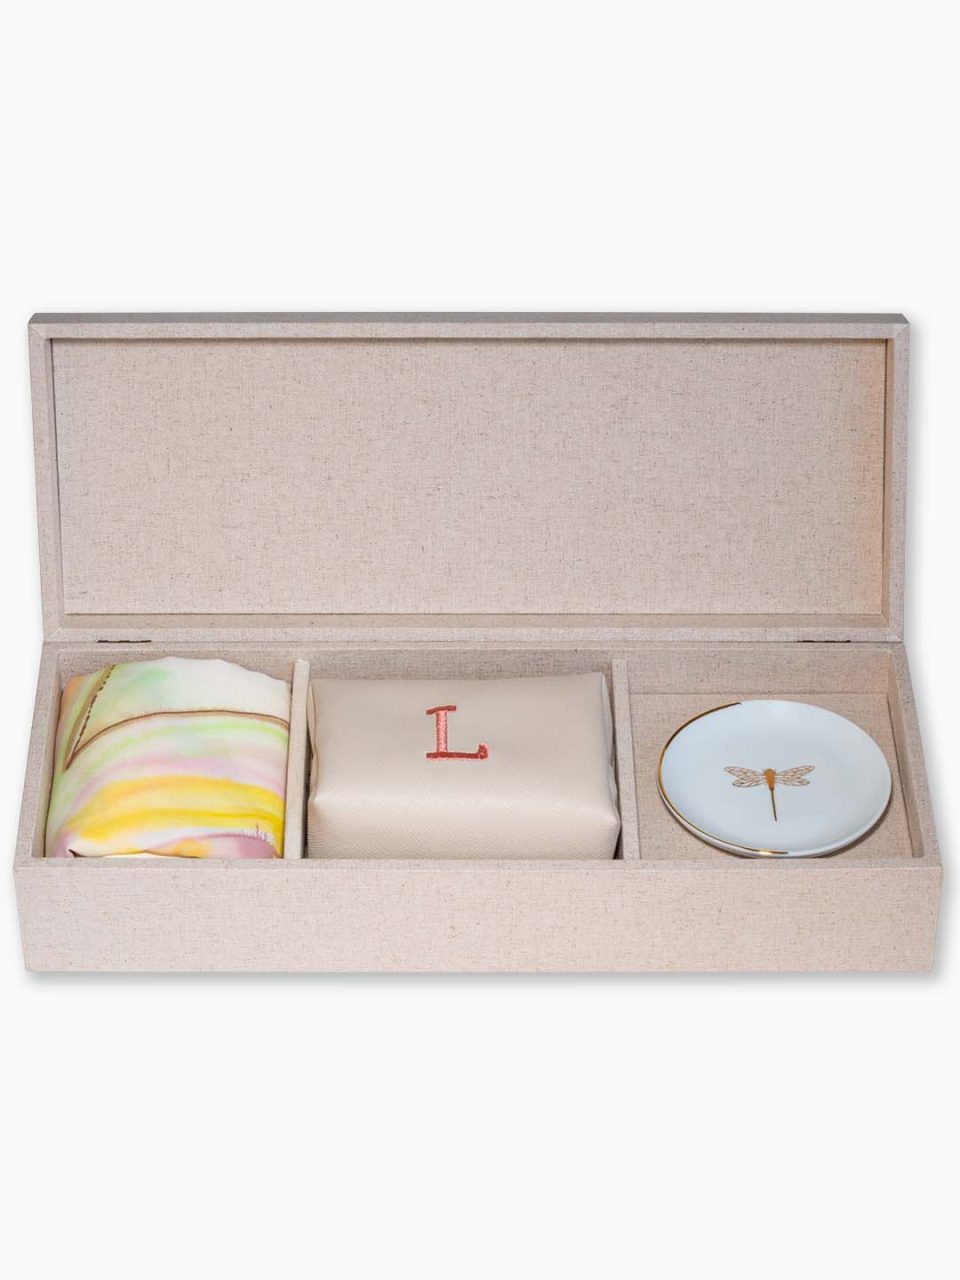 Kit Good Memories II : caixa forrada com linho + lenço, joia do dia e necessaire bordado